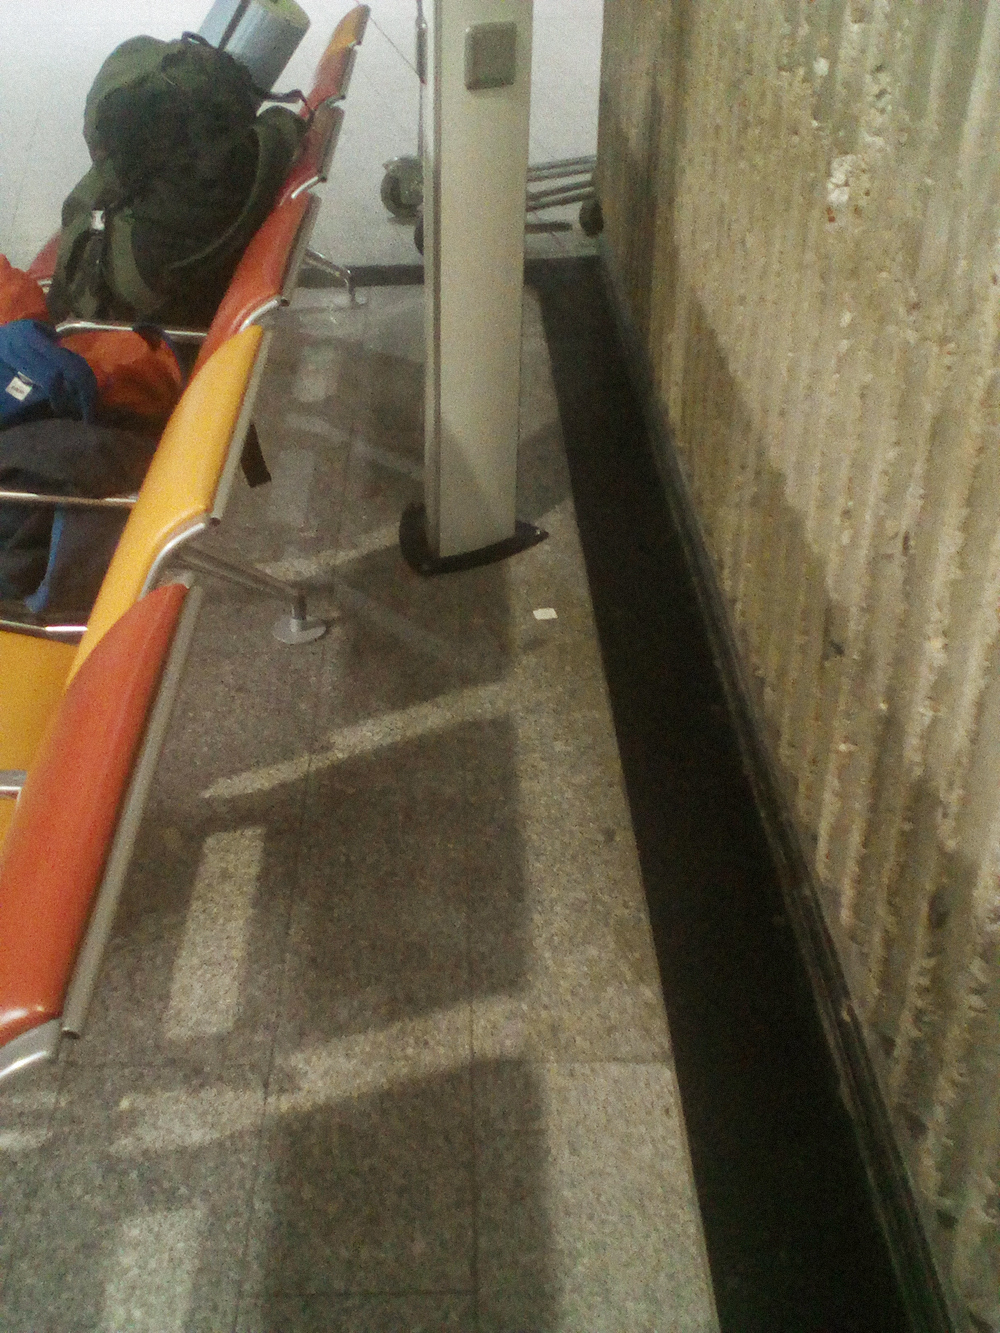 В аэропорту я спал на туристическом коврике в этом уголке. Намного удобнее, чем на сиденьях, и есть розетка под боком